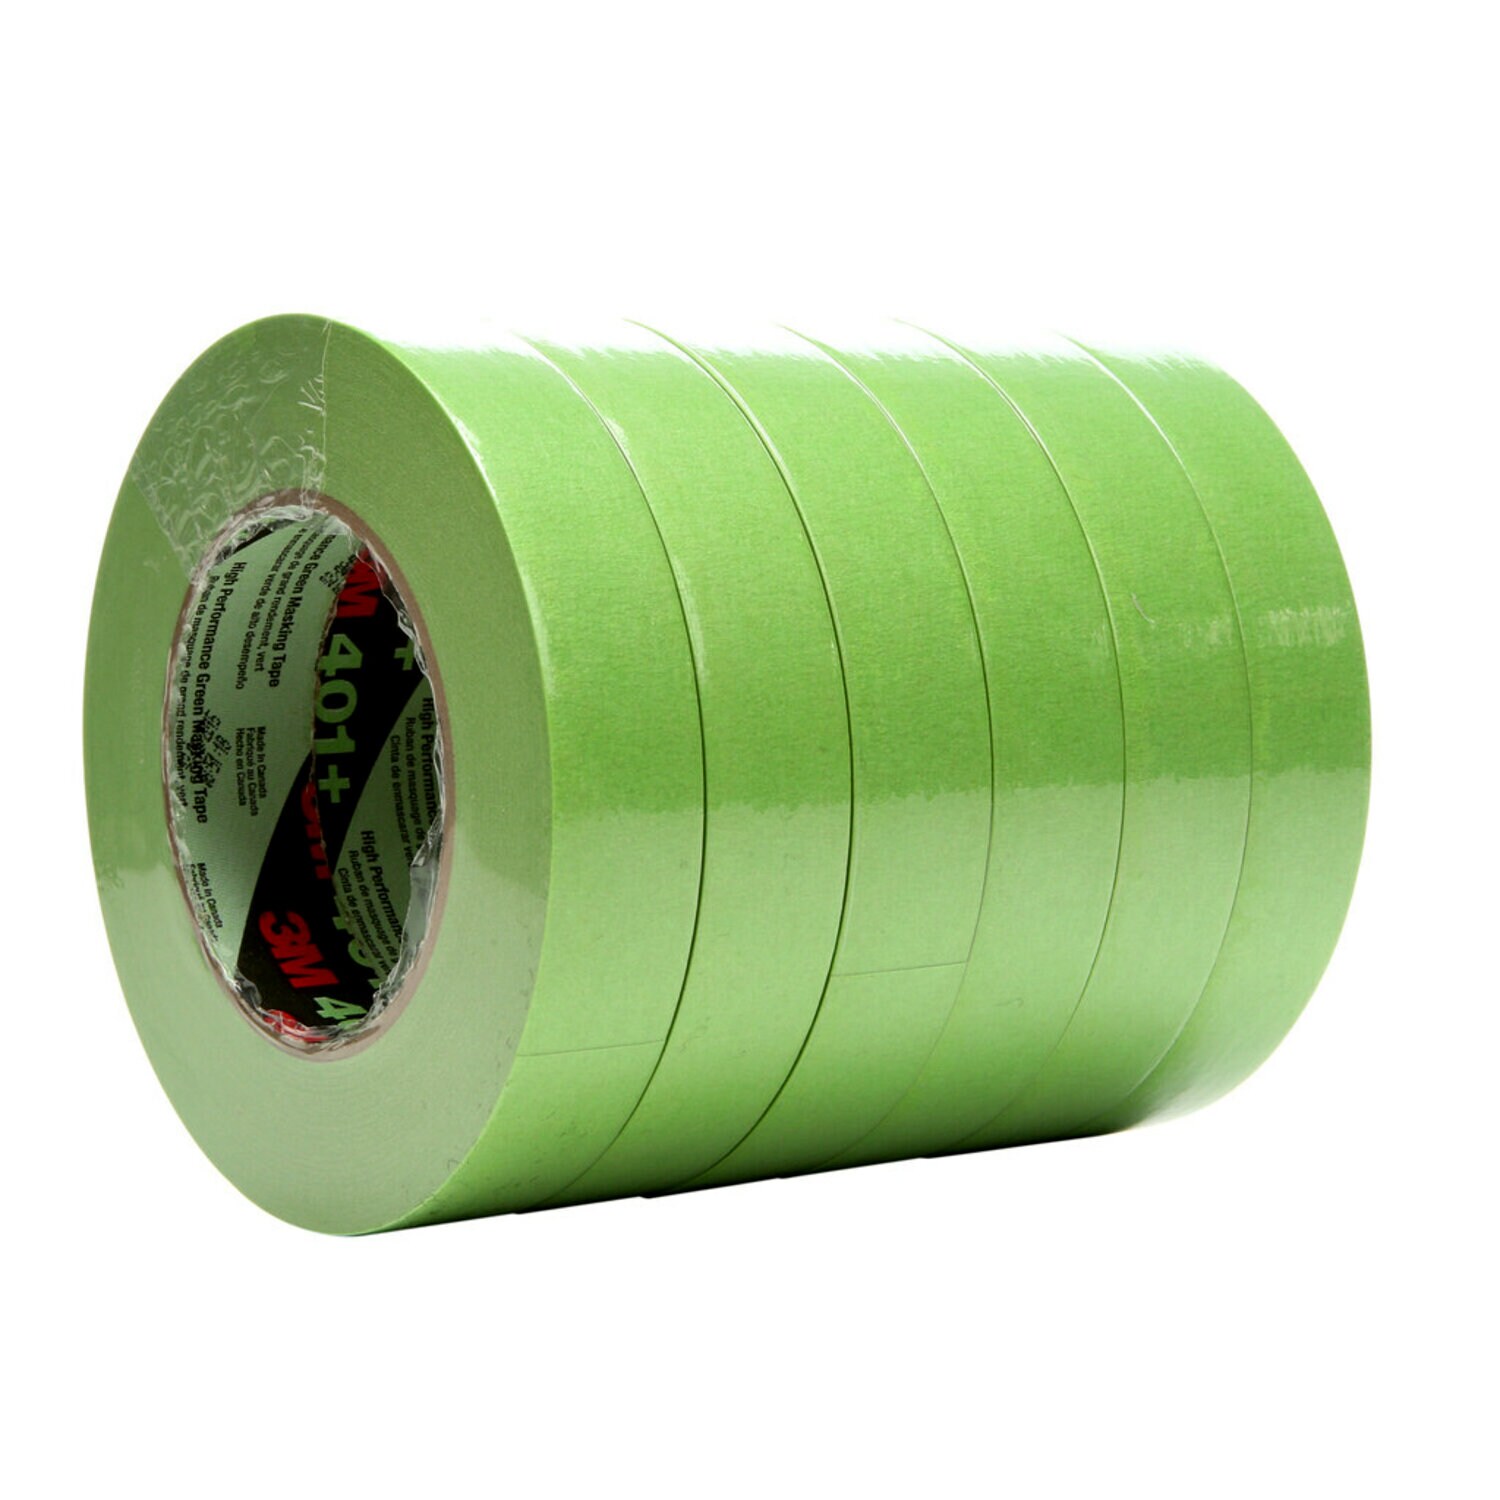 Pack-n-Tape  3M 5111 Mar-Hyde Single Stage Self-Etching Primer Aerosol, 19  oz, 6 per case - Pack-n-Tape